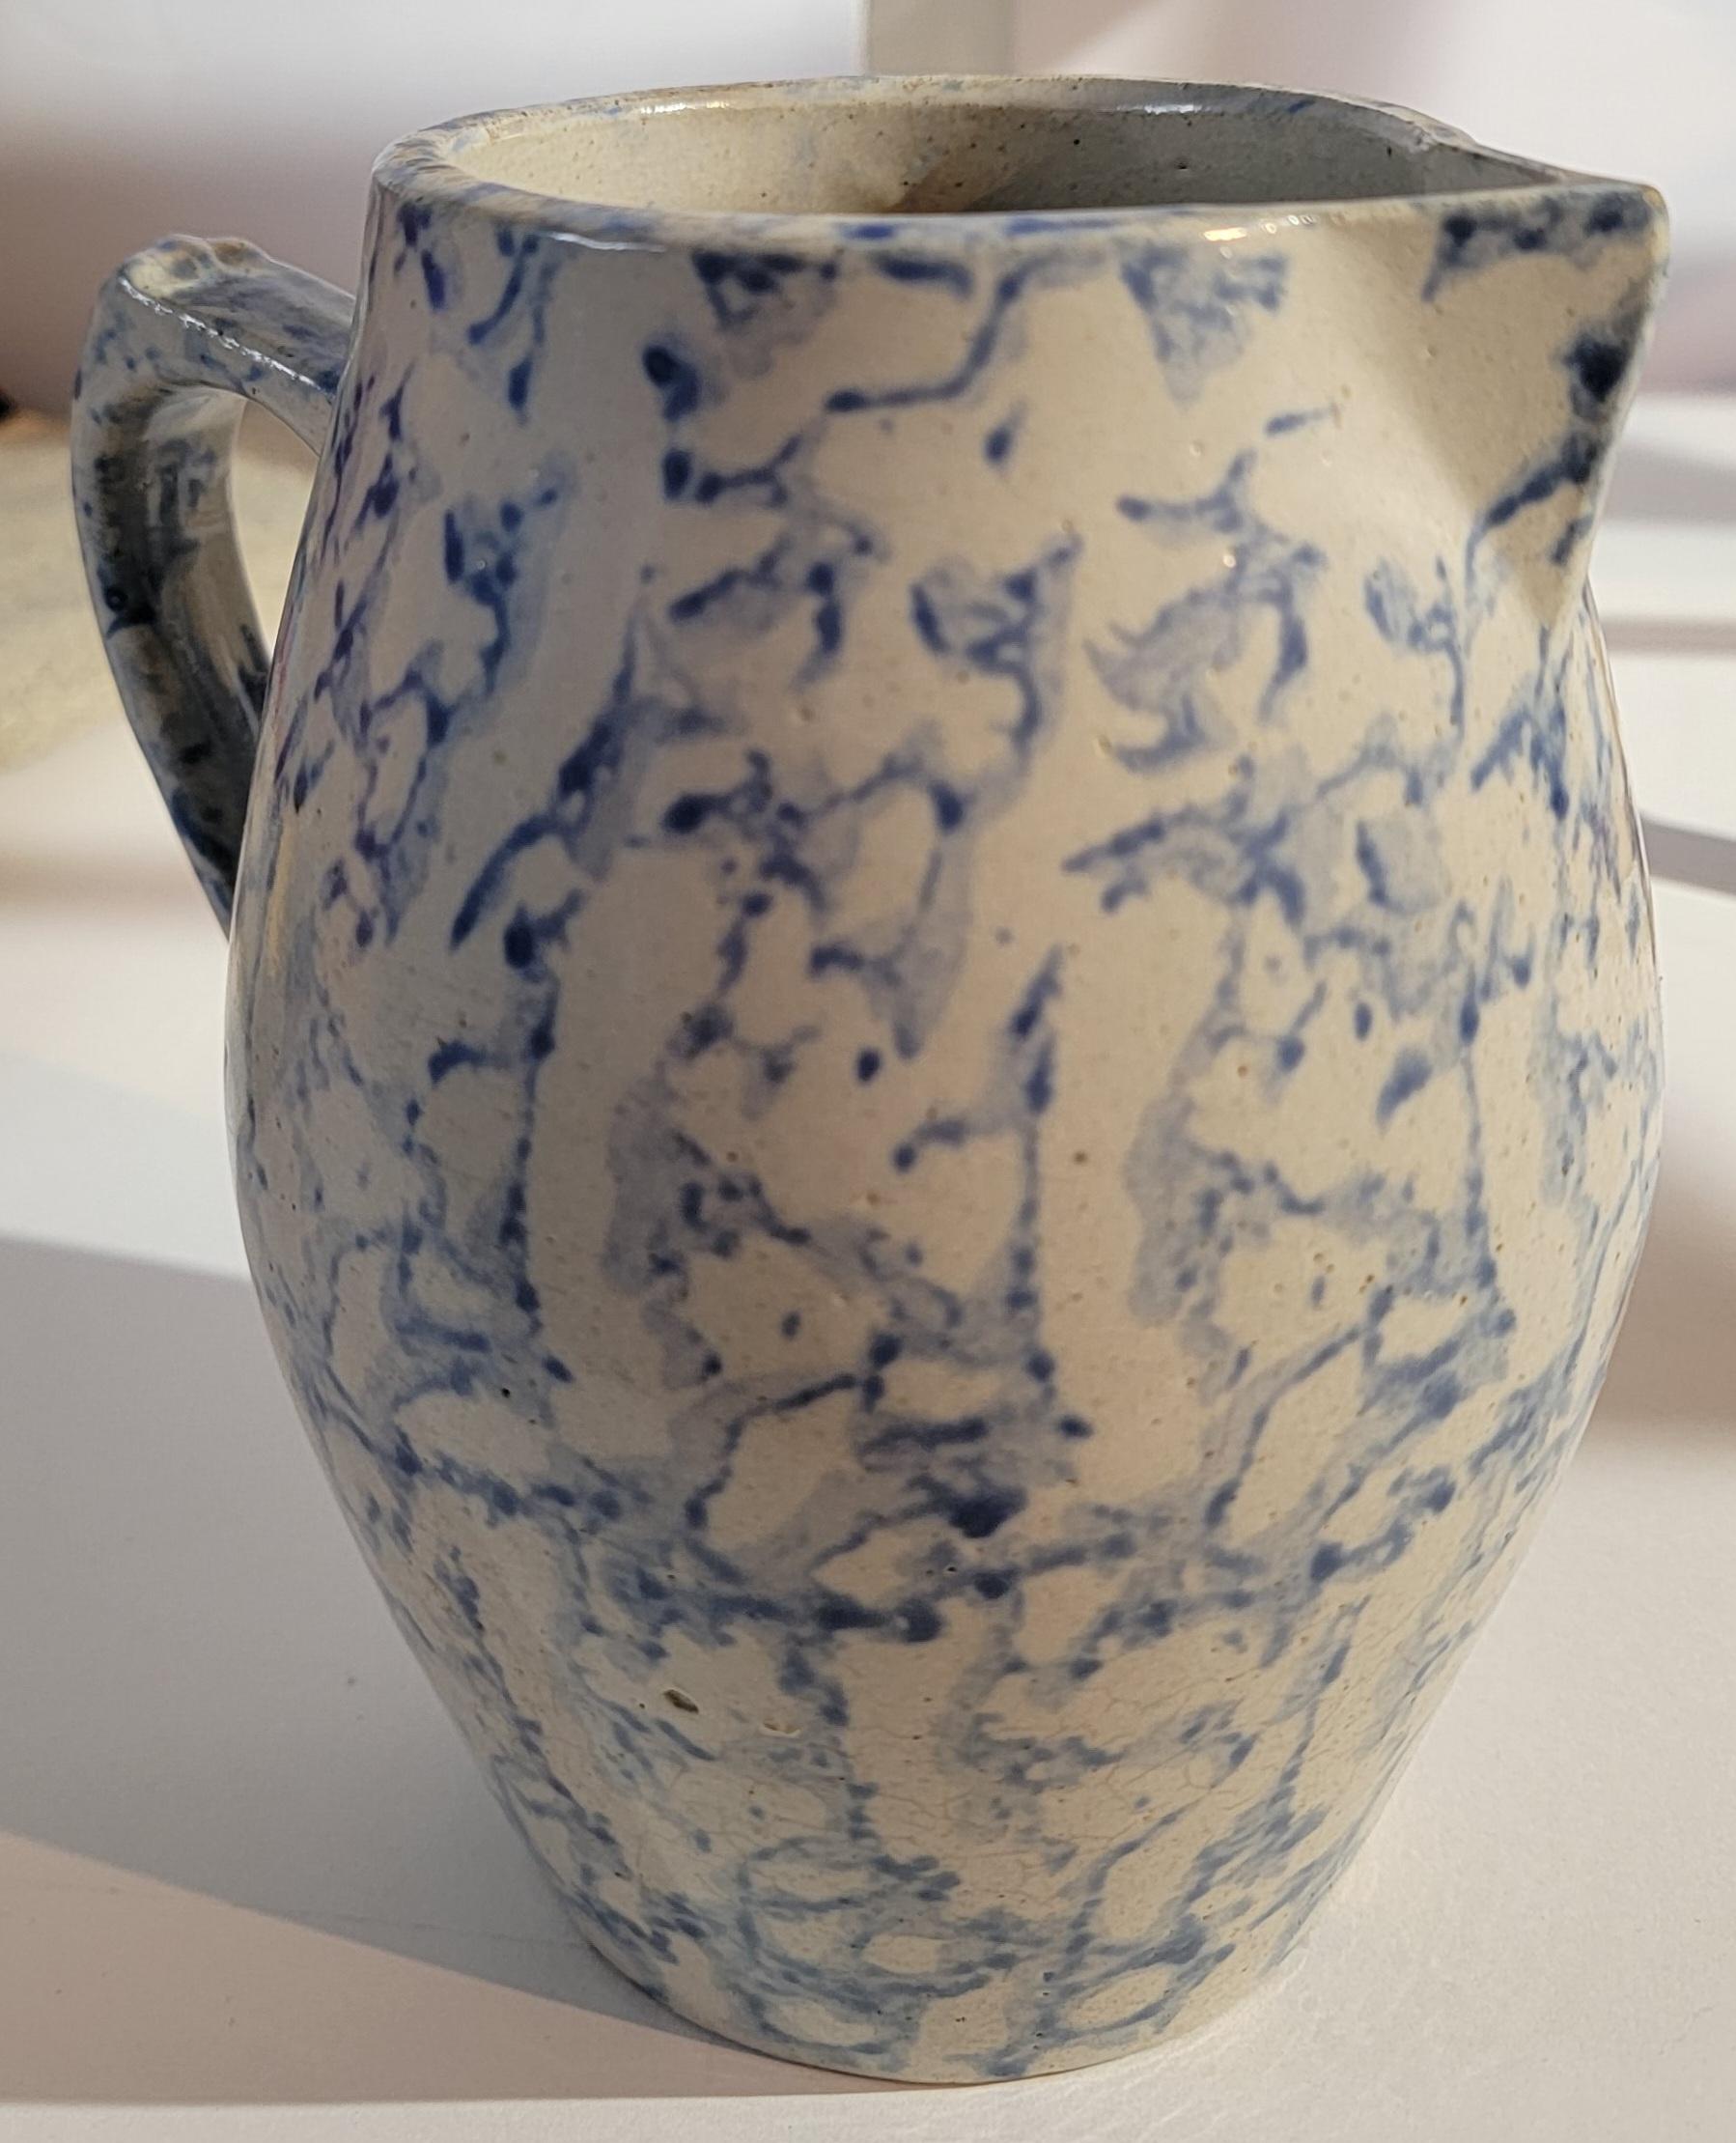 Late 19th Century Blue and White Spongeware Stoneware Hot Water